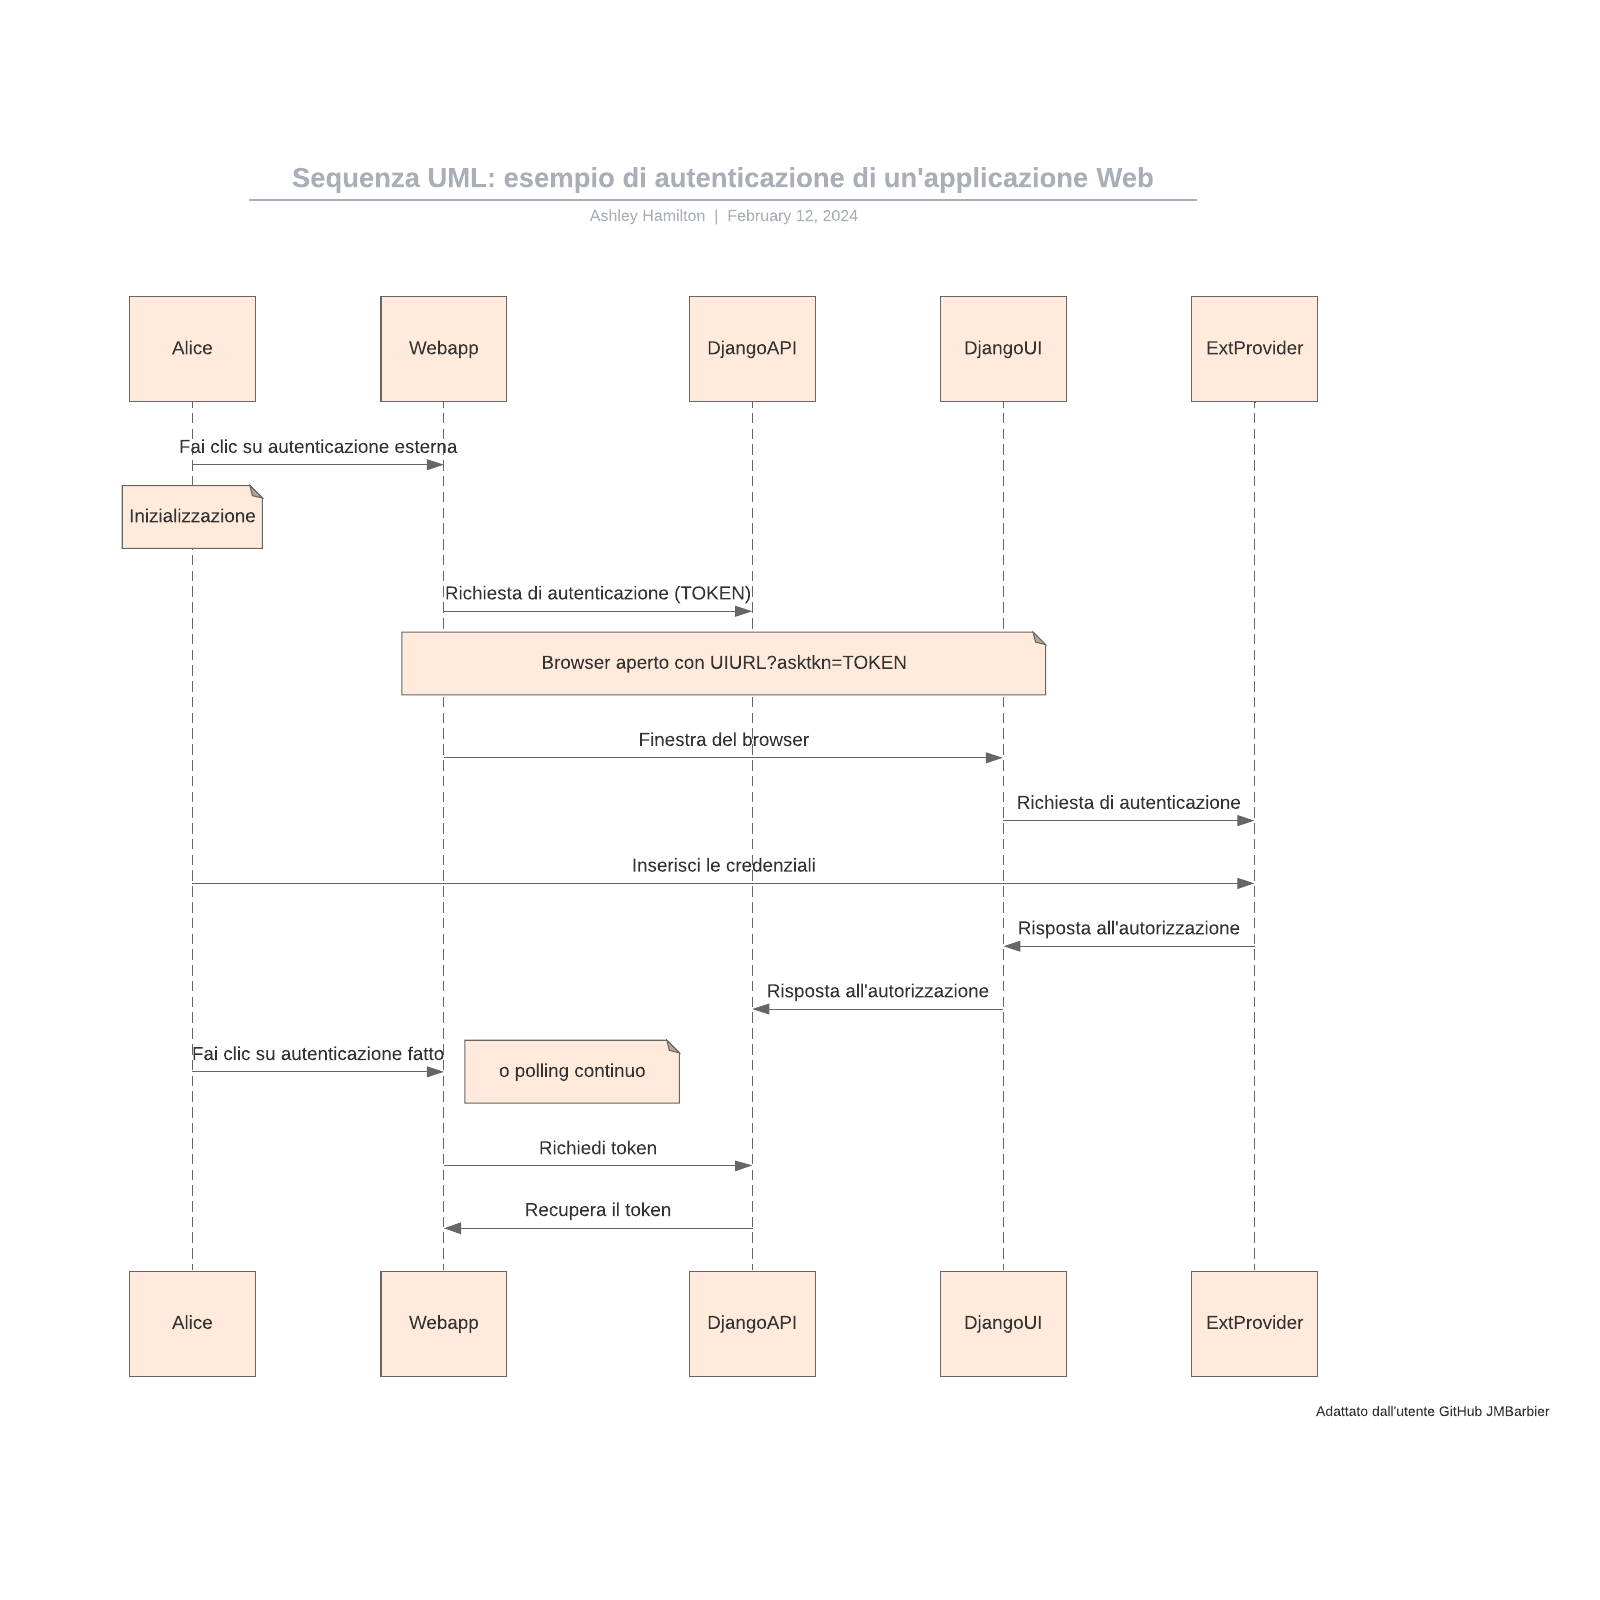 Sequenza UML: esempio di autenticazione di un'applicazione Web example